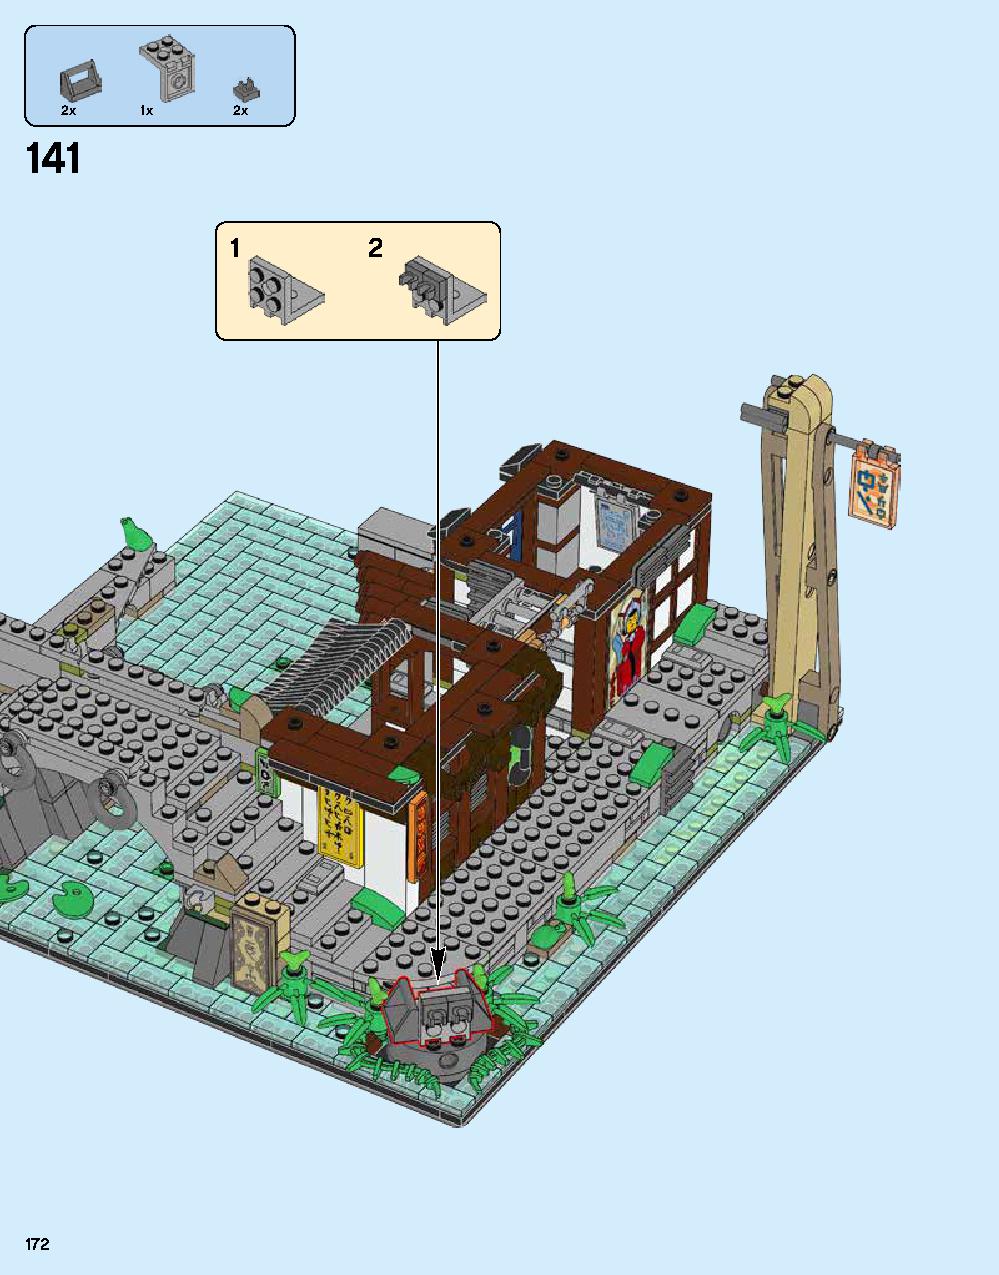 ニンジャゴー シティ 70620 レゴの商品情報 レゴの説明書・組立方法 172 page